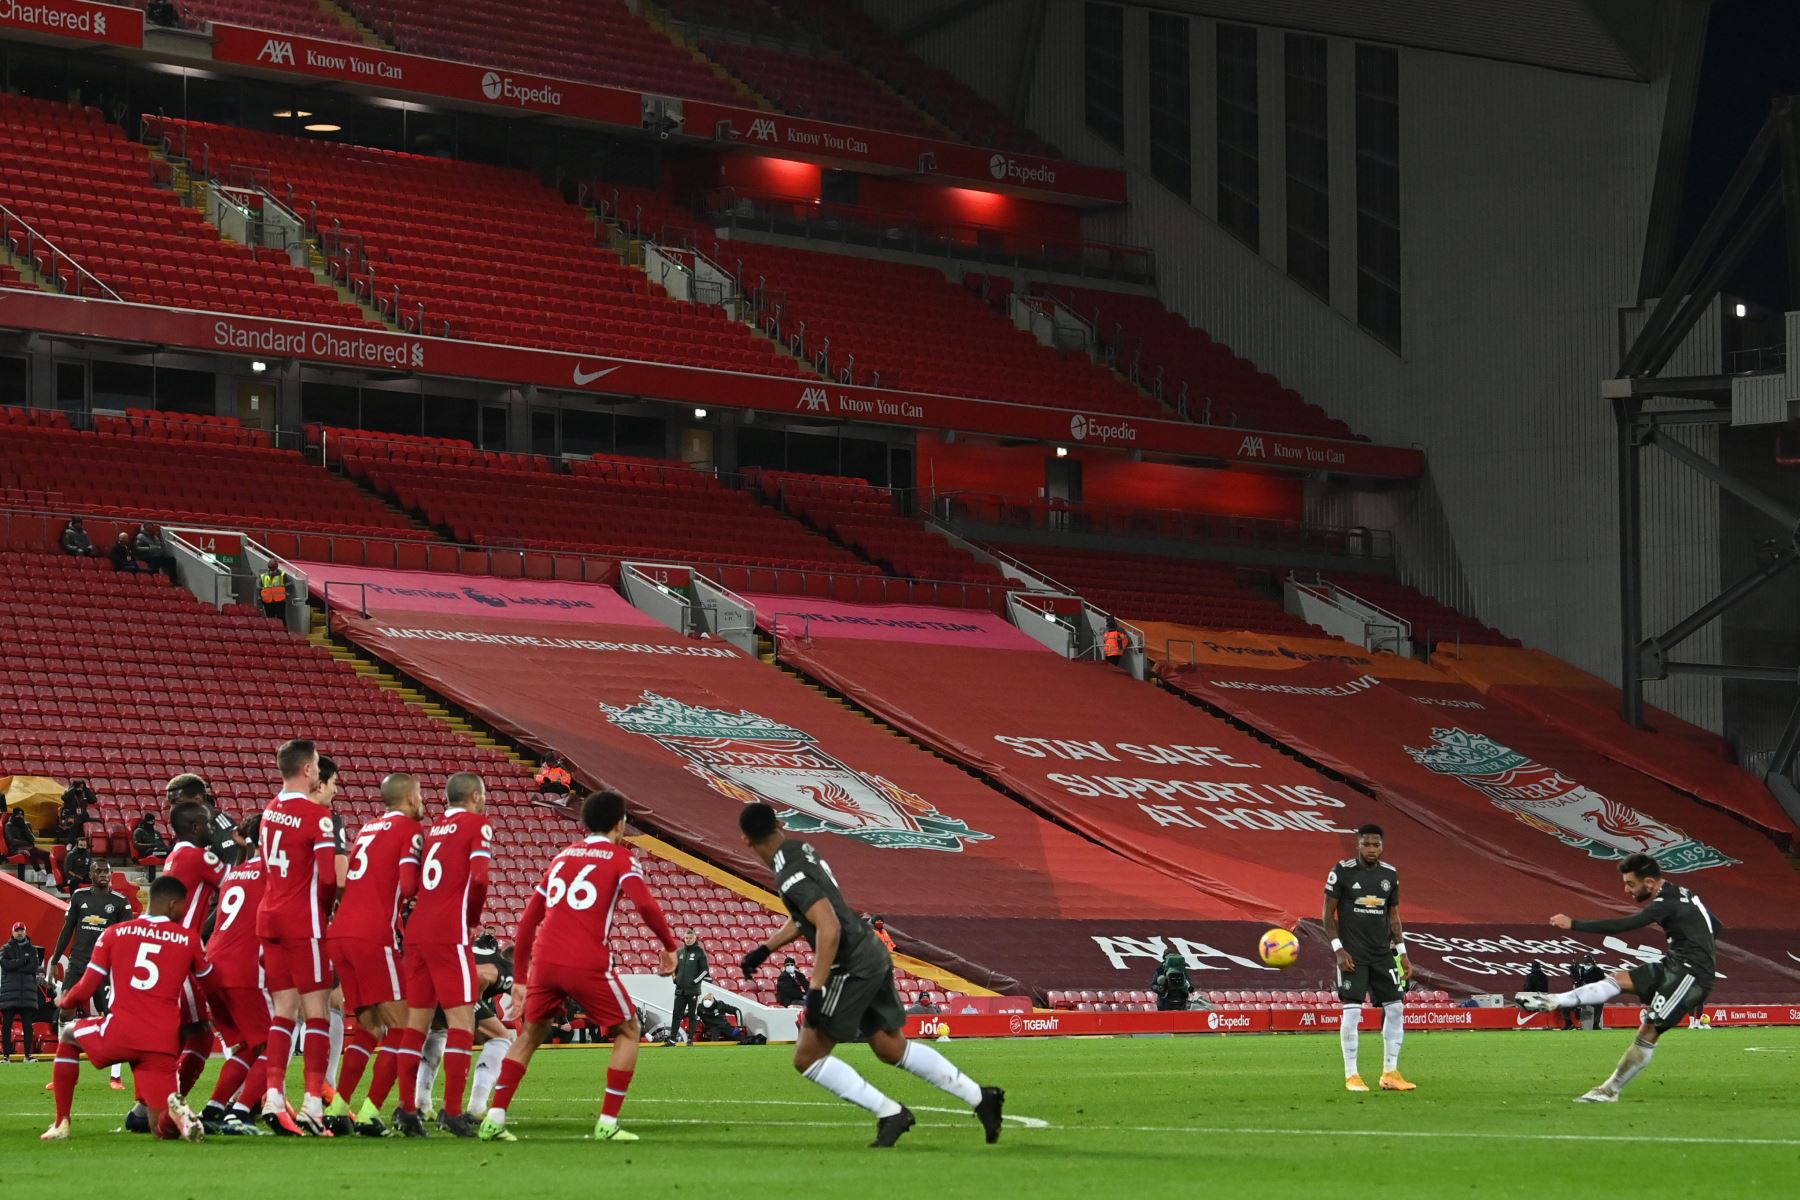 El centrocampista portugués del Manchester United Bruno Fernandes golpea este tiro libre por poco durante el partido de fútbol de la Premier League inglesa entre Liverpool y Manchester United en Anfield en Liverpool.
Foto: AFP